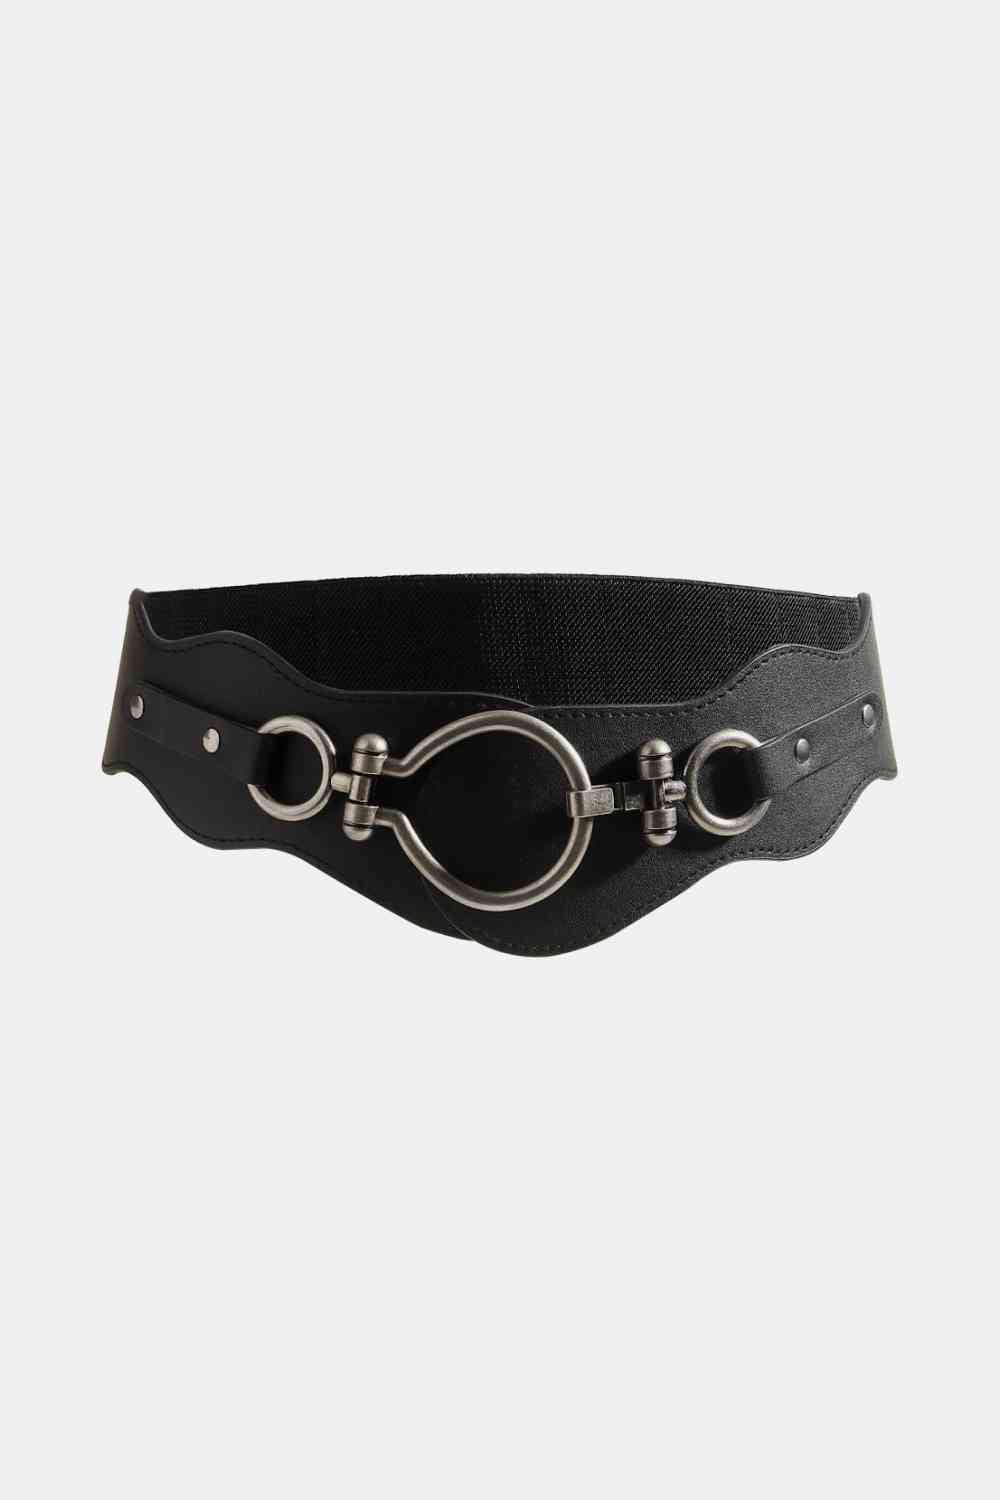 PU Leather Zinc Alloy Buckle Belt